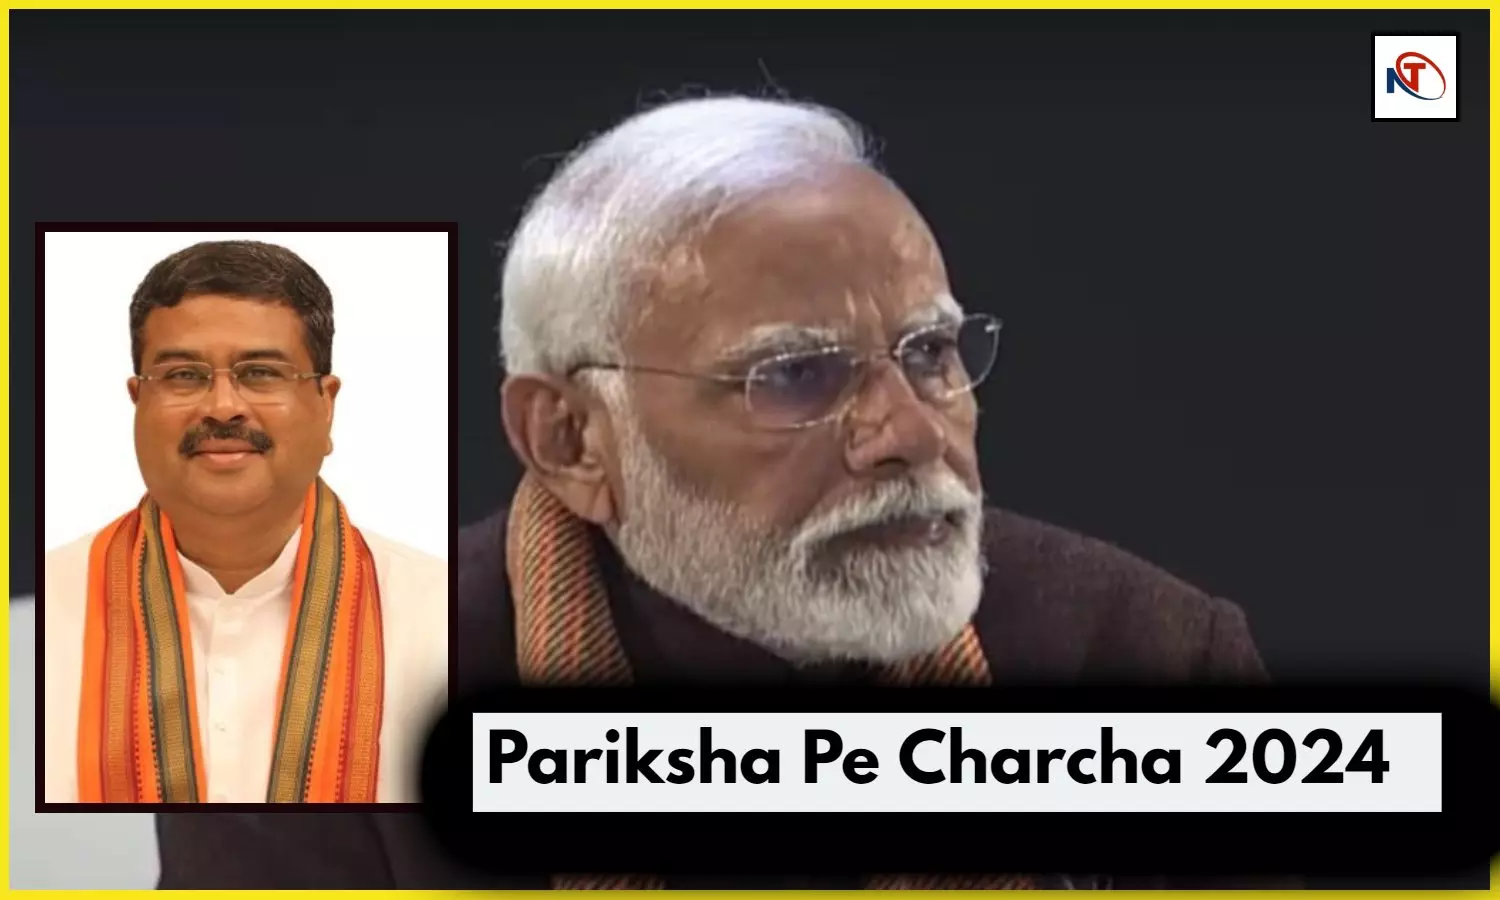 Pariksha Pe Charcha 2024 Highlights Minister Dharmendra Pradhan